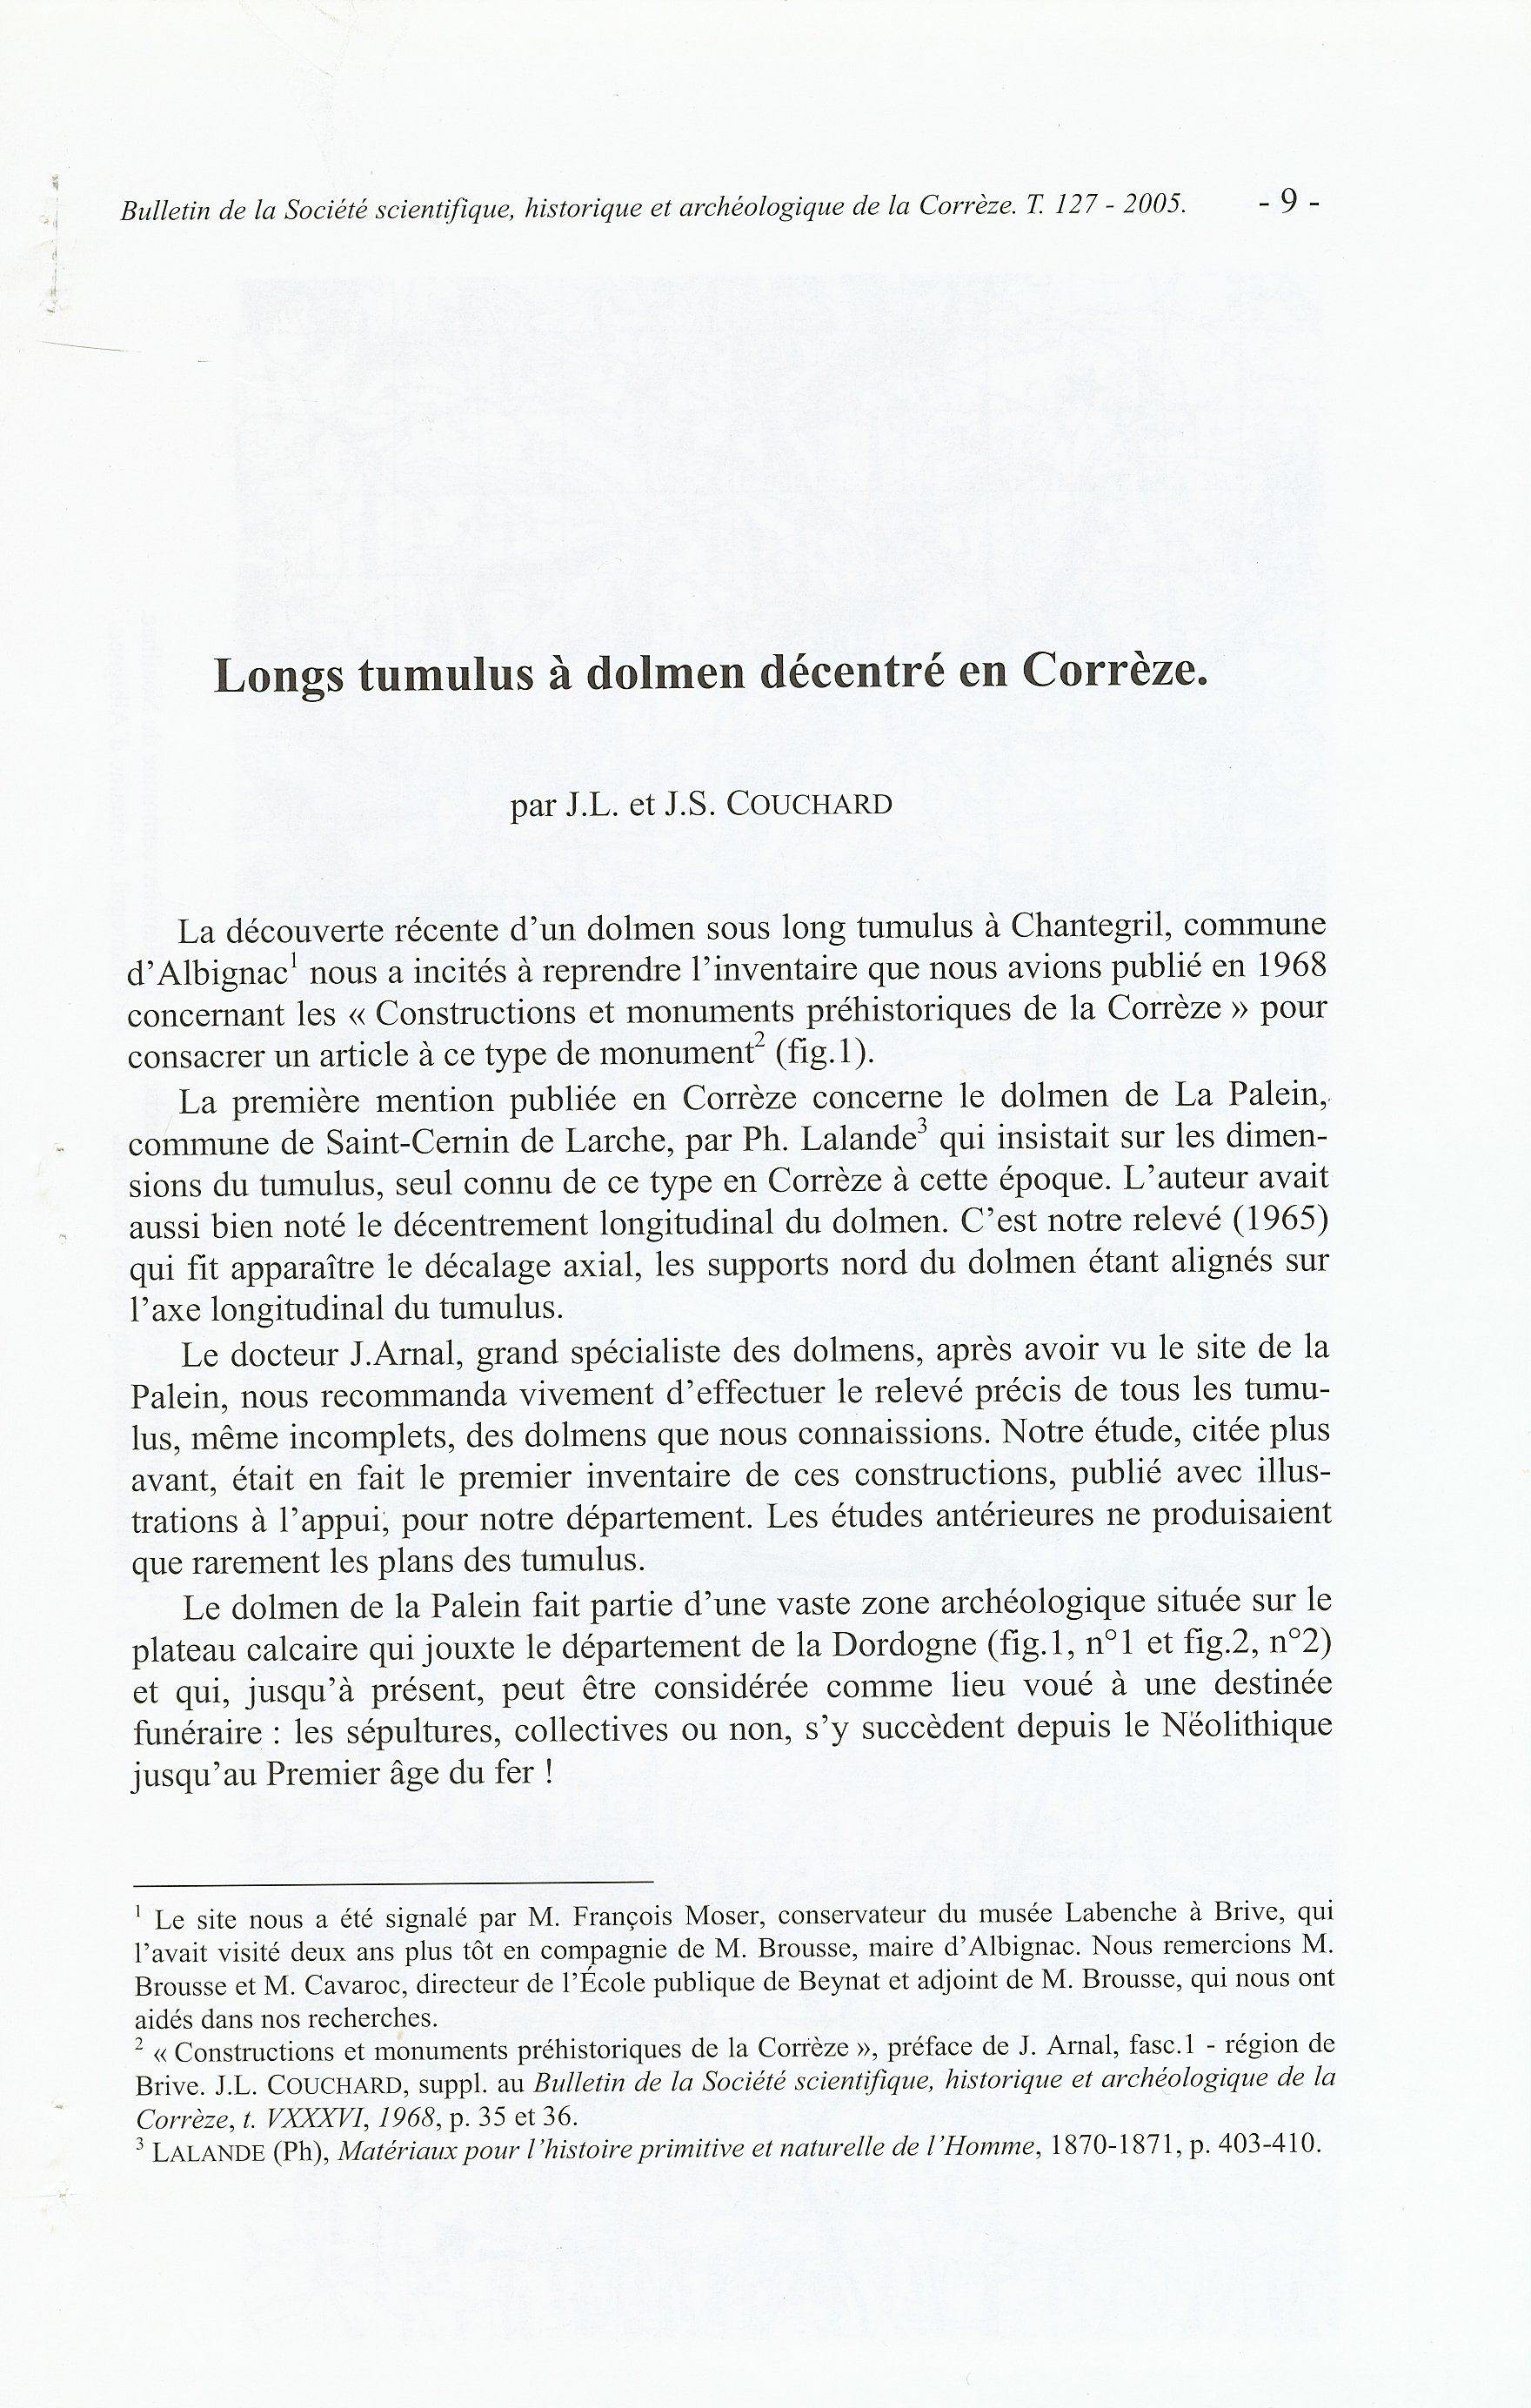 Extraits du bulletin de 2005 de la Société scientifique, historique et archéologique de la Corrèze